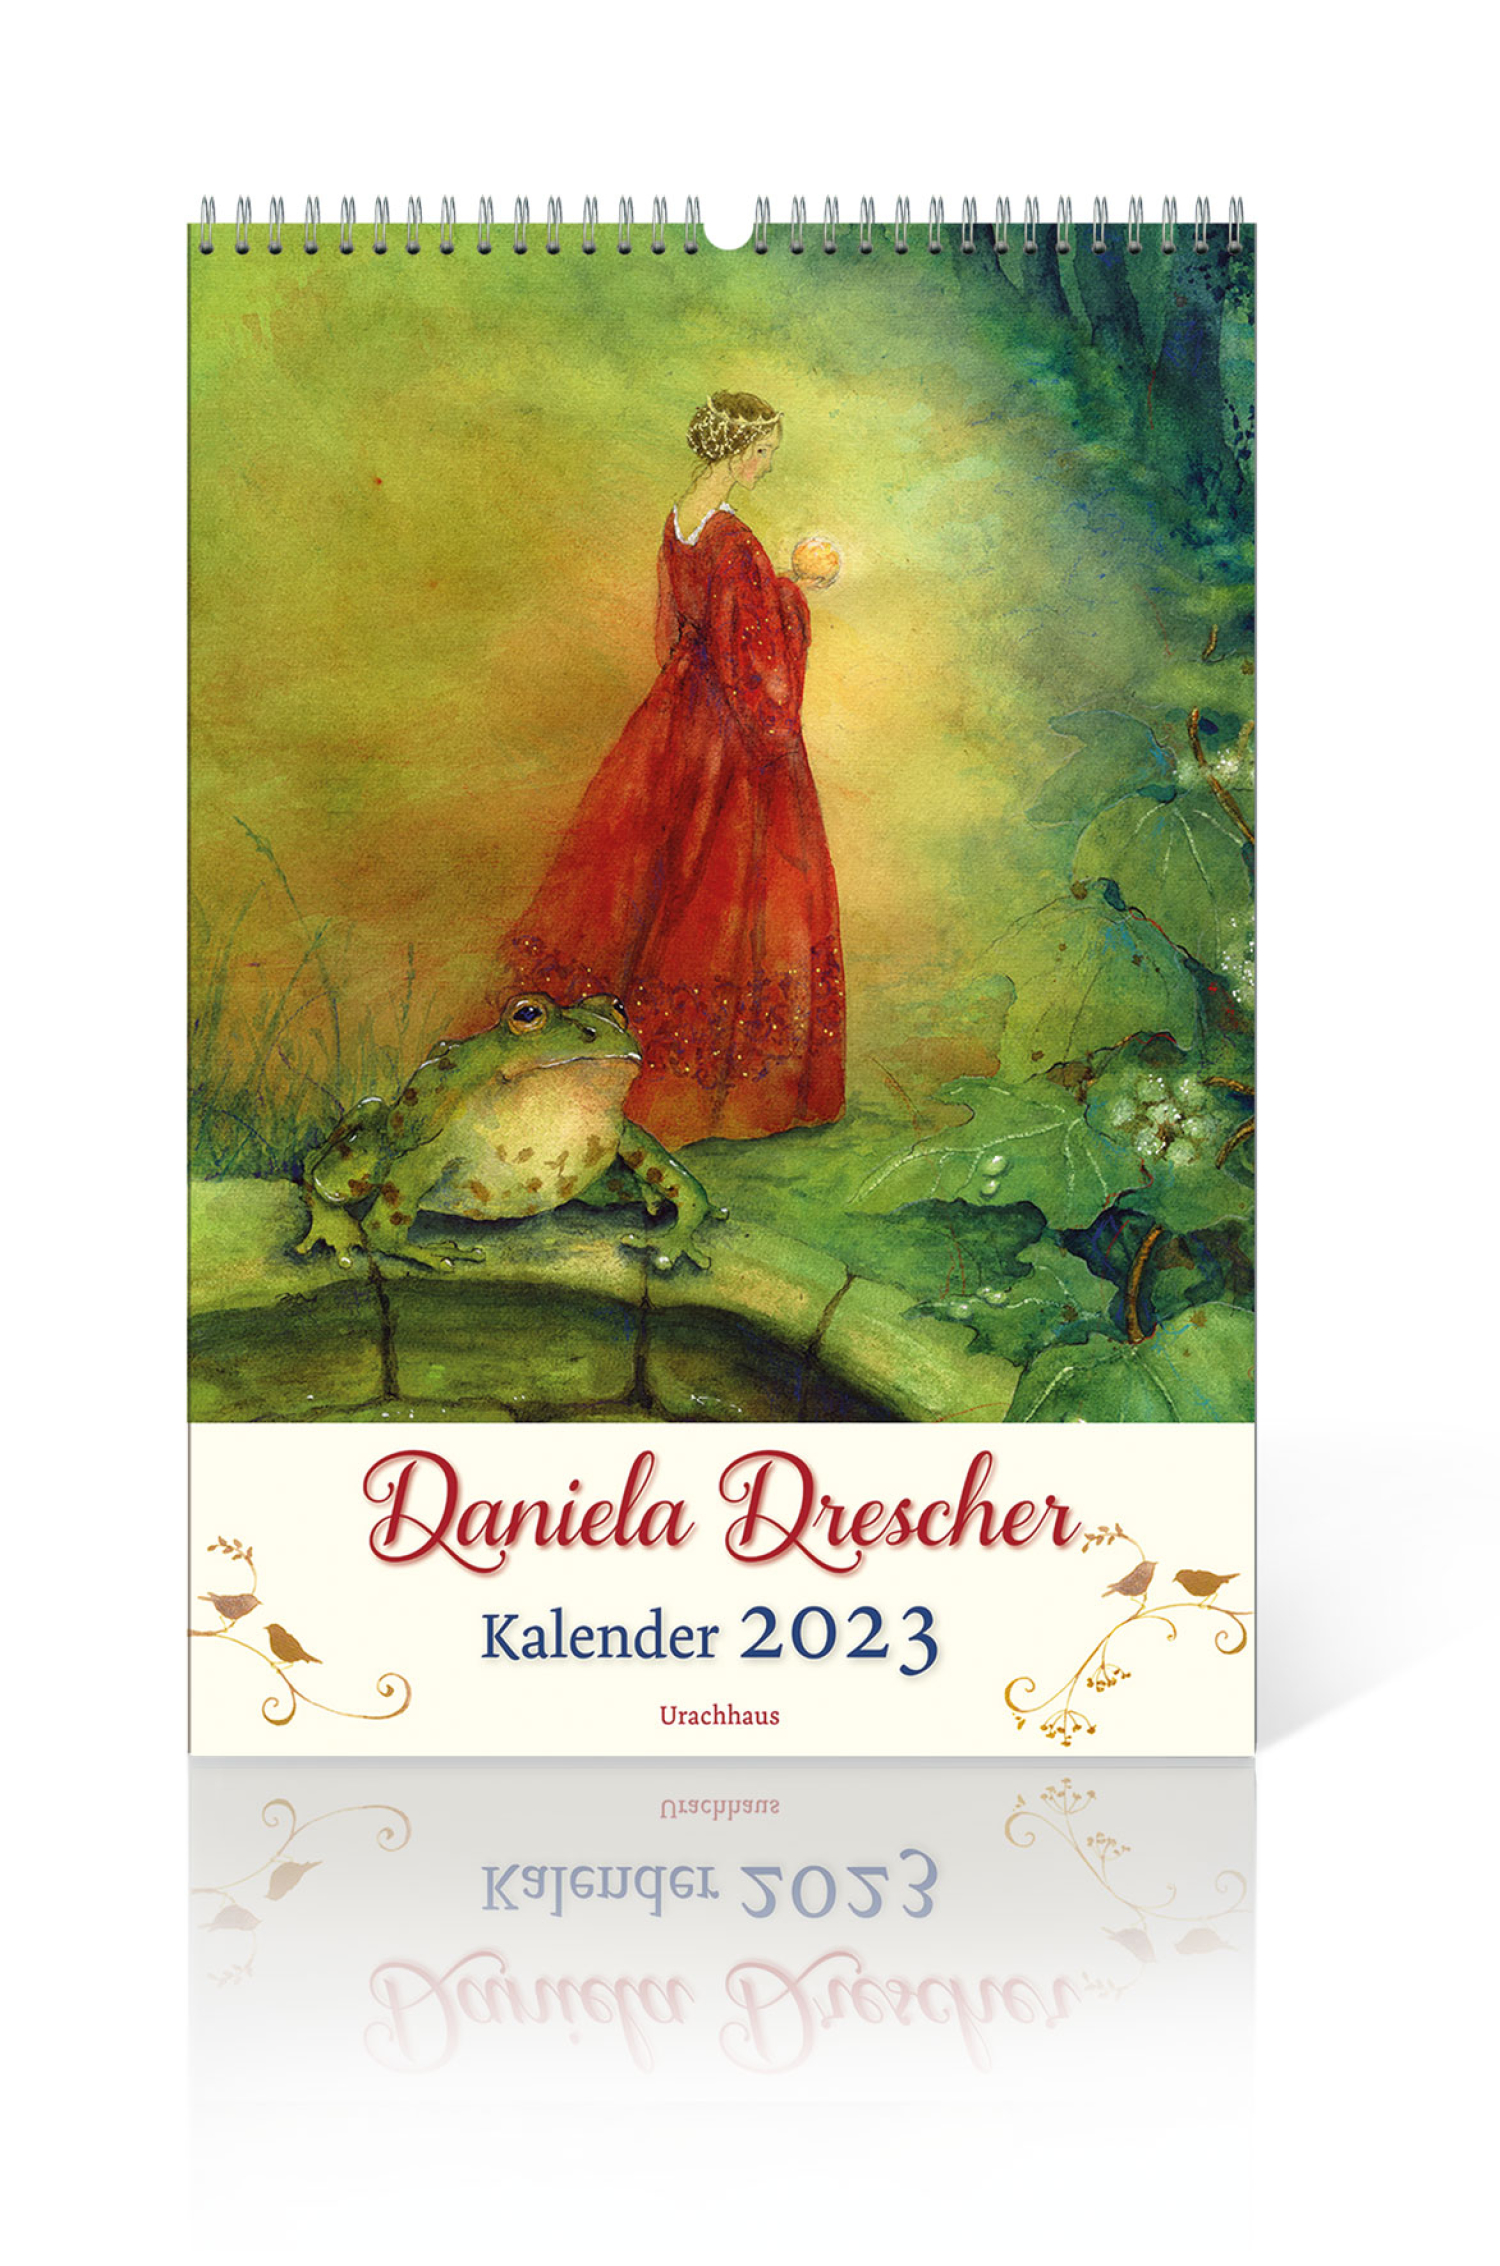 Daniela Drescher Kalender 2023, Produktbild 1